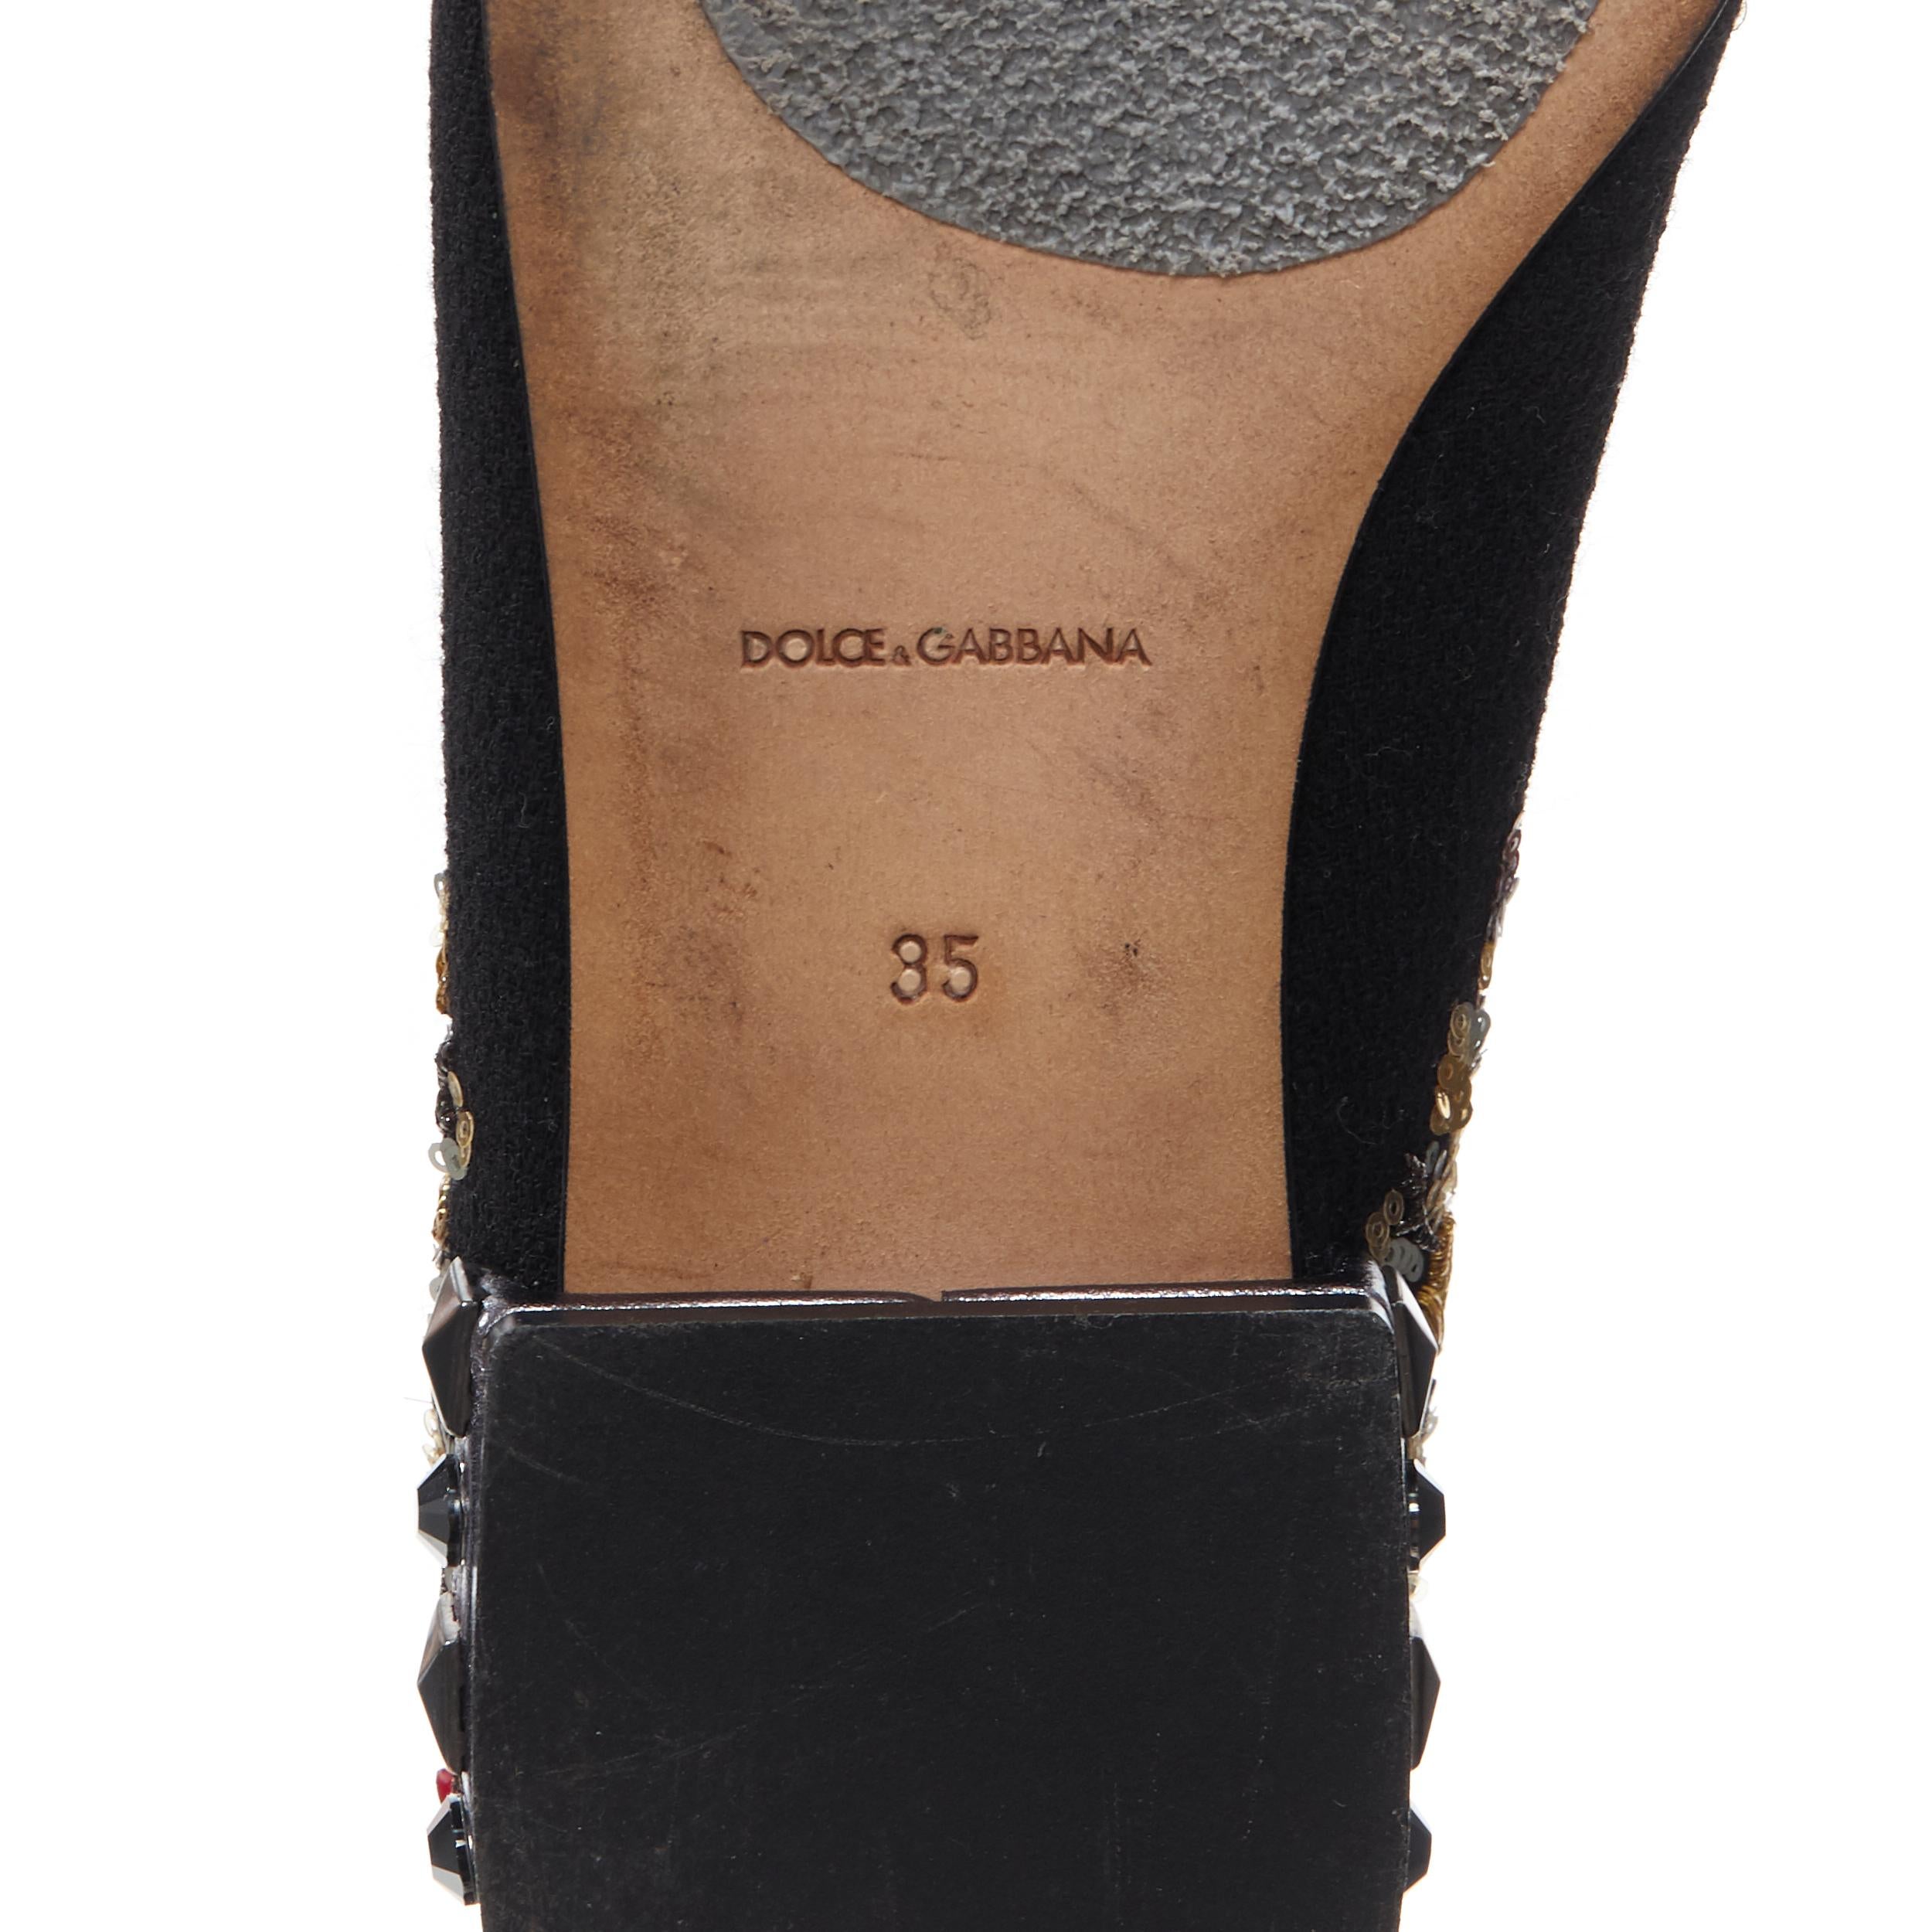 DOLCE GABBANA black suede royalty key sequin studded heel flat loafer EU35 3